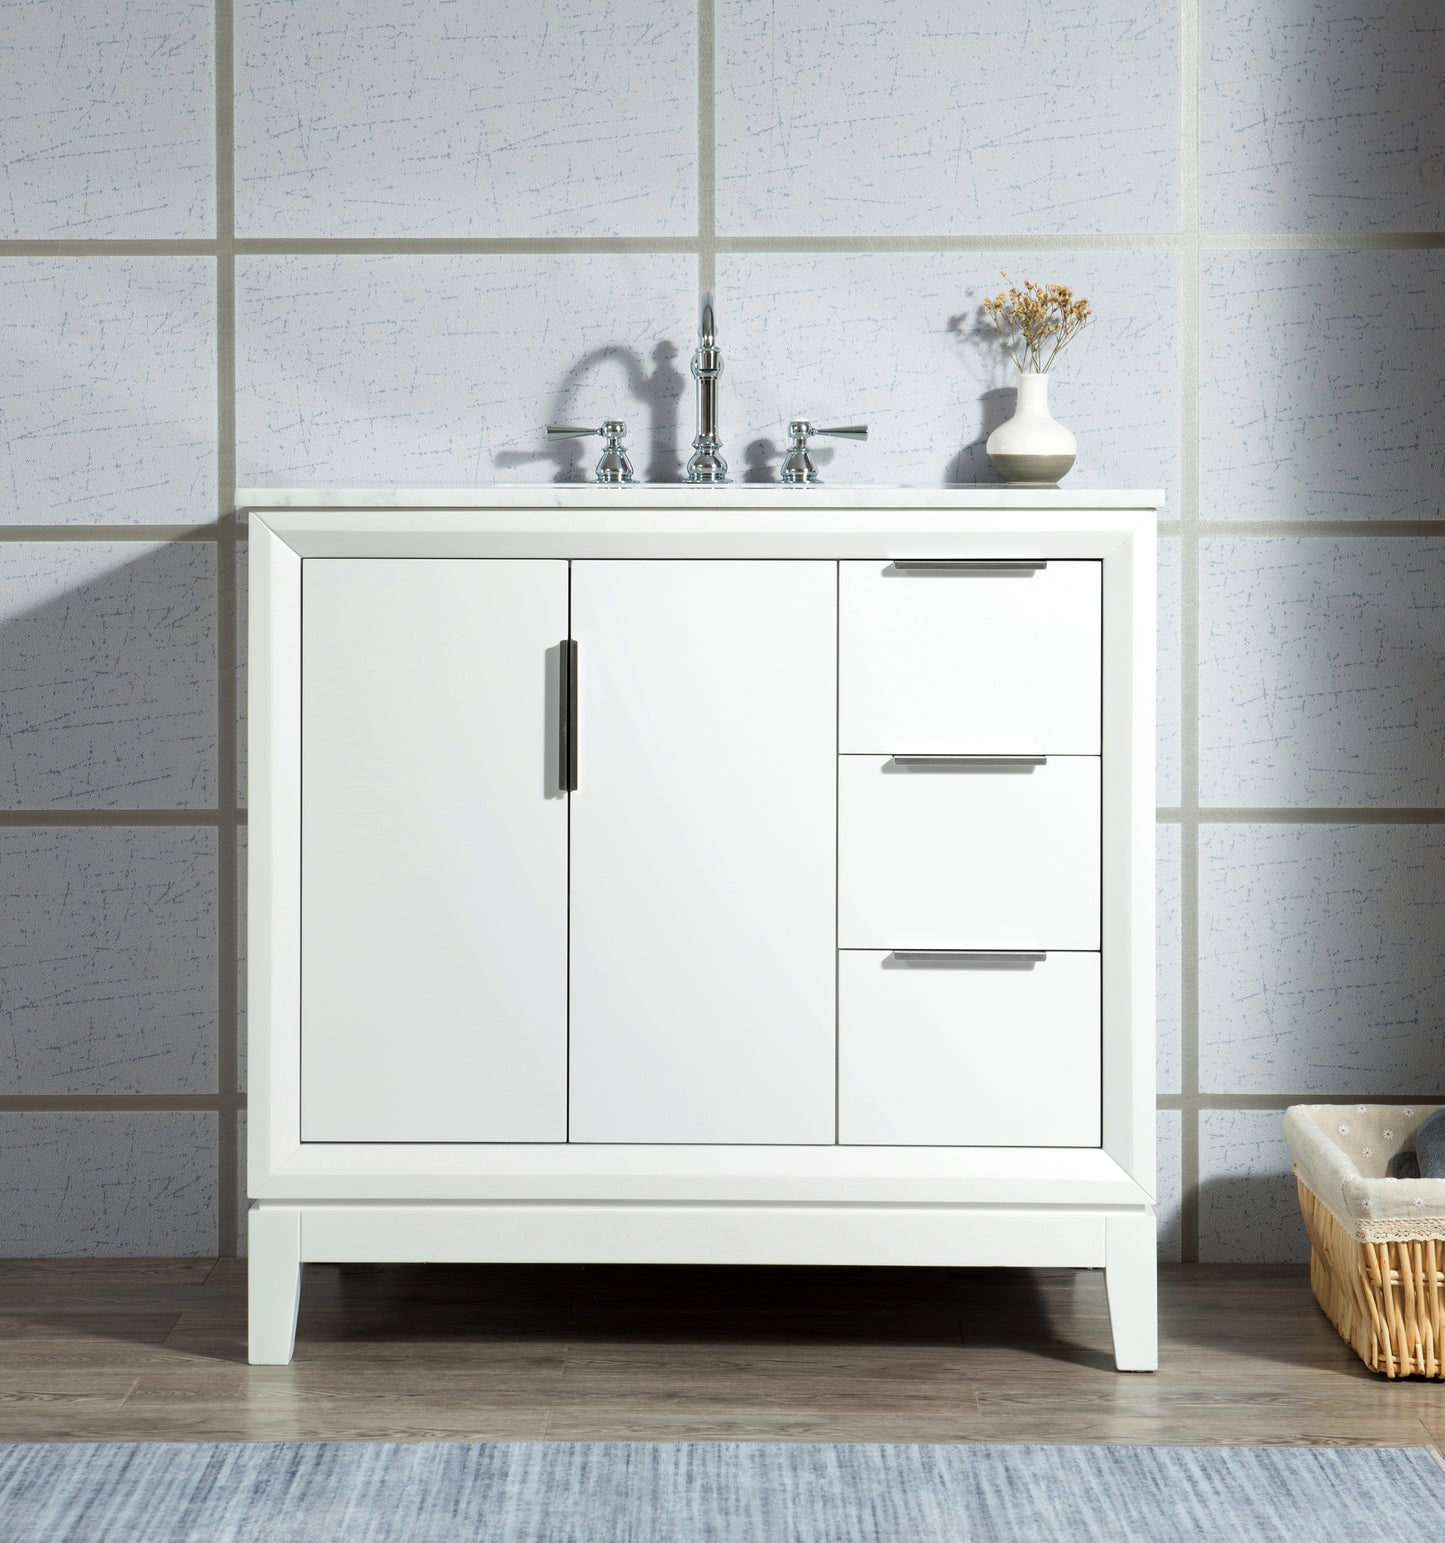 Water Creation Elizabeth 36" Single Sink Carrara White Marble Vanity with Lavatory Faucet - Luxe Bathroom Vanities